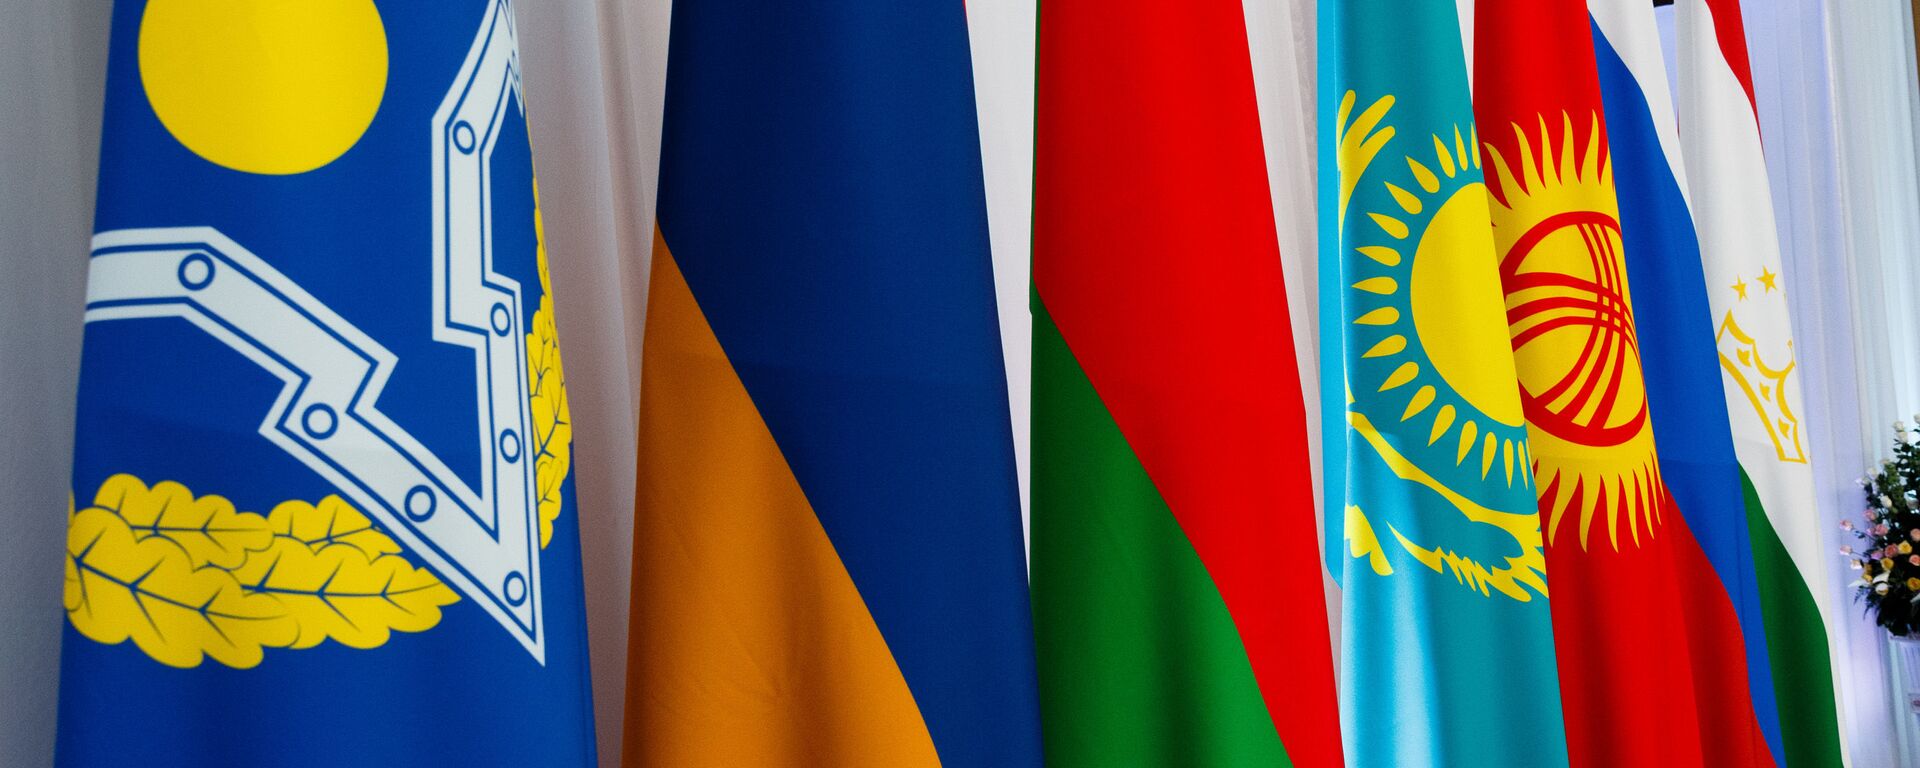 Флаги стран-участниц совместного заседания ОДКБ - Sputnik Беларусь, 1920, 17.11.2020